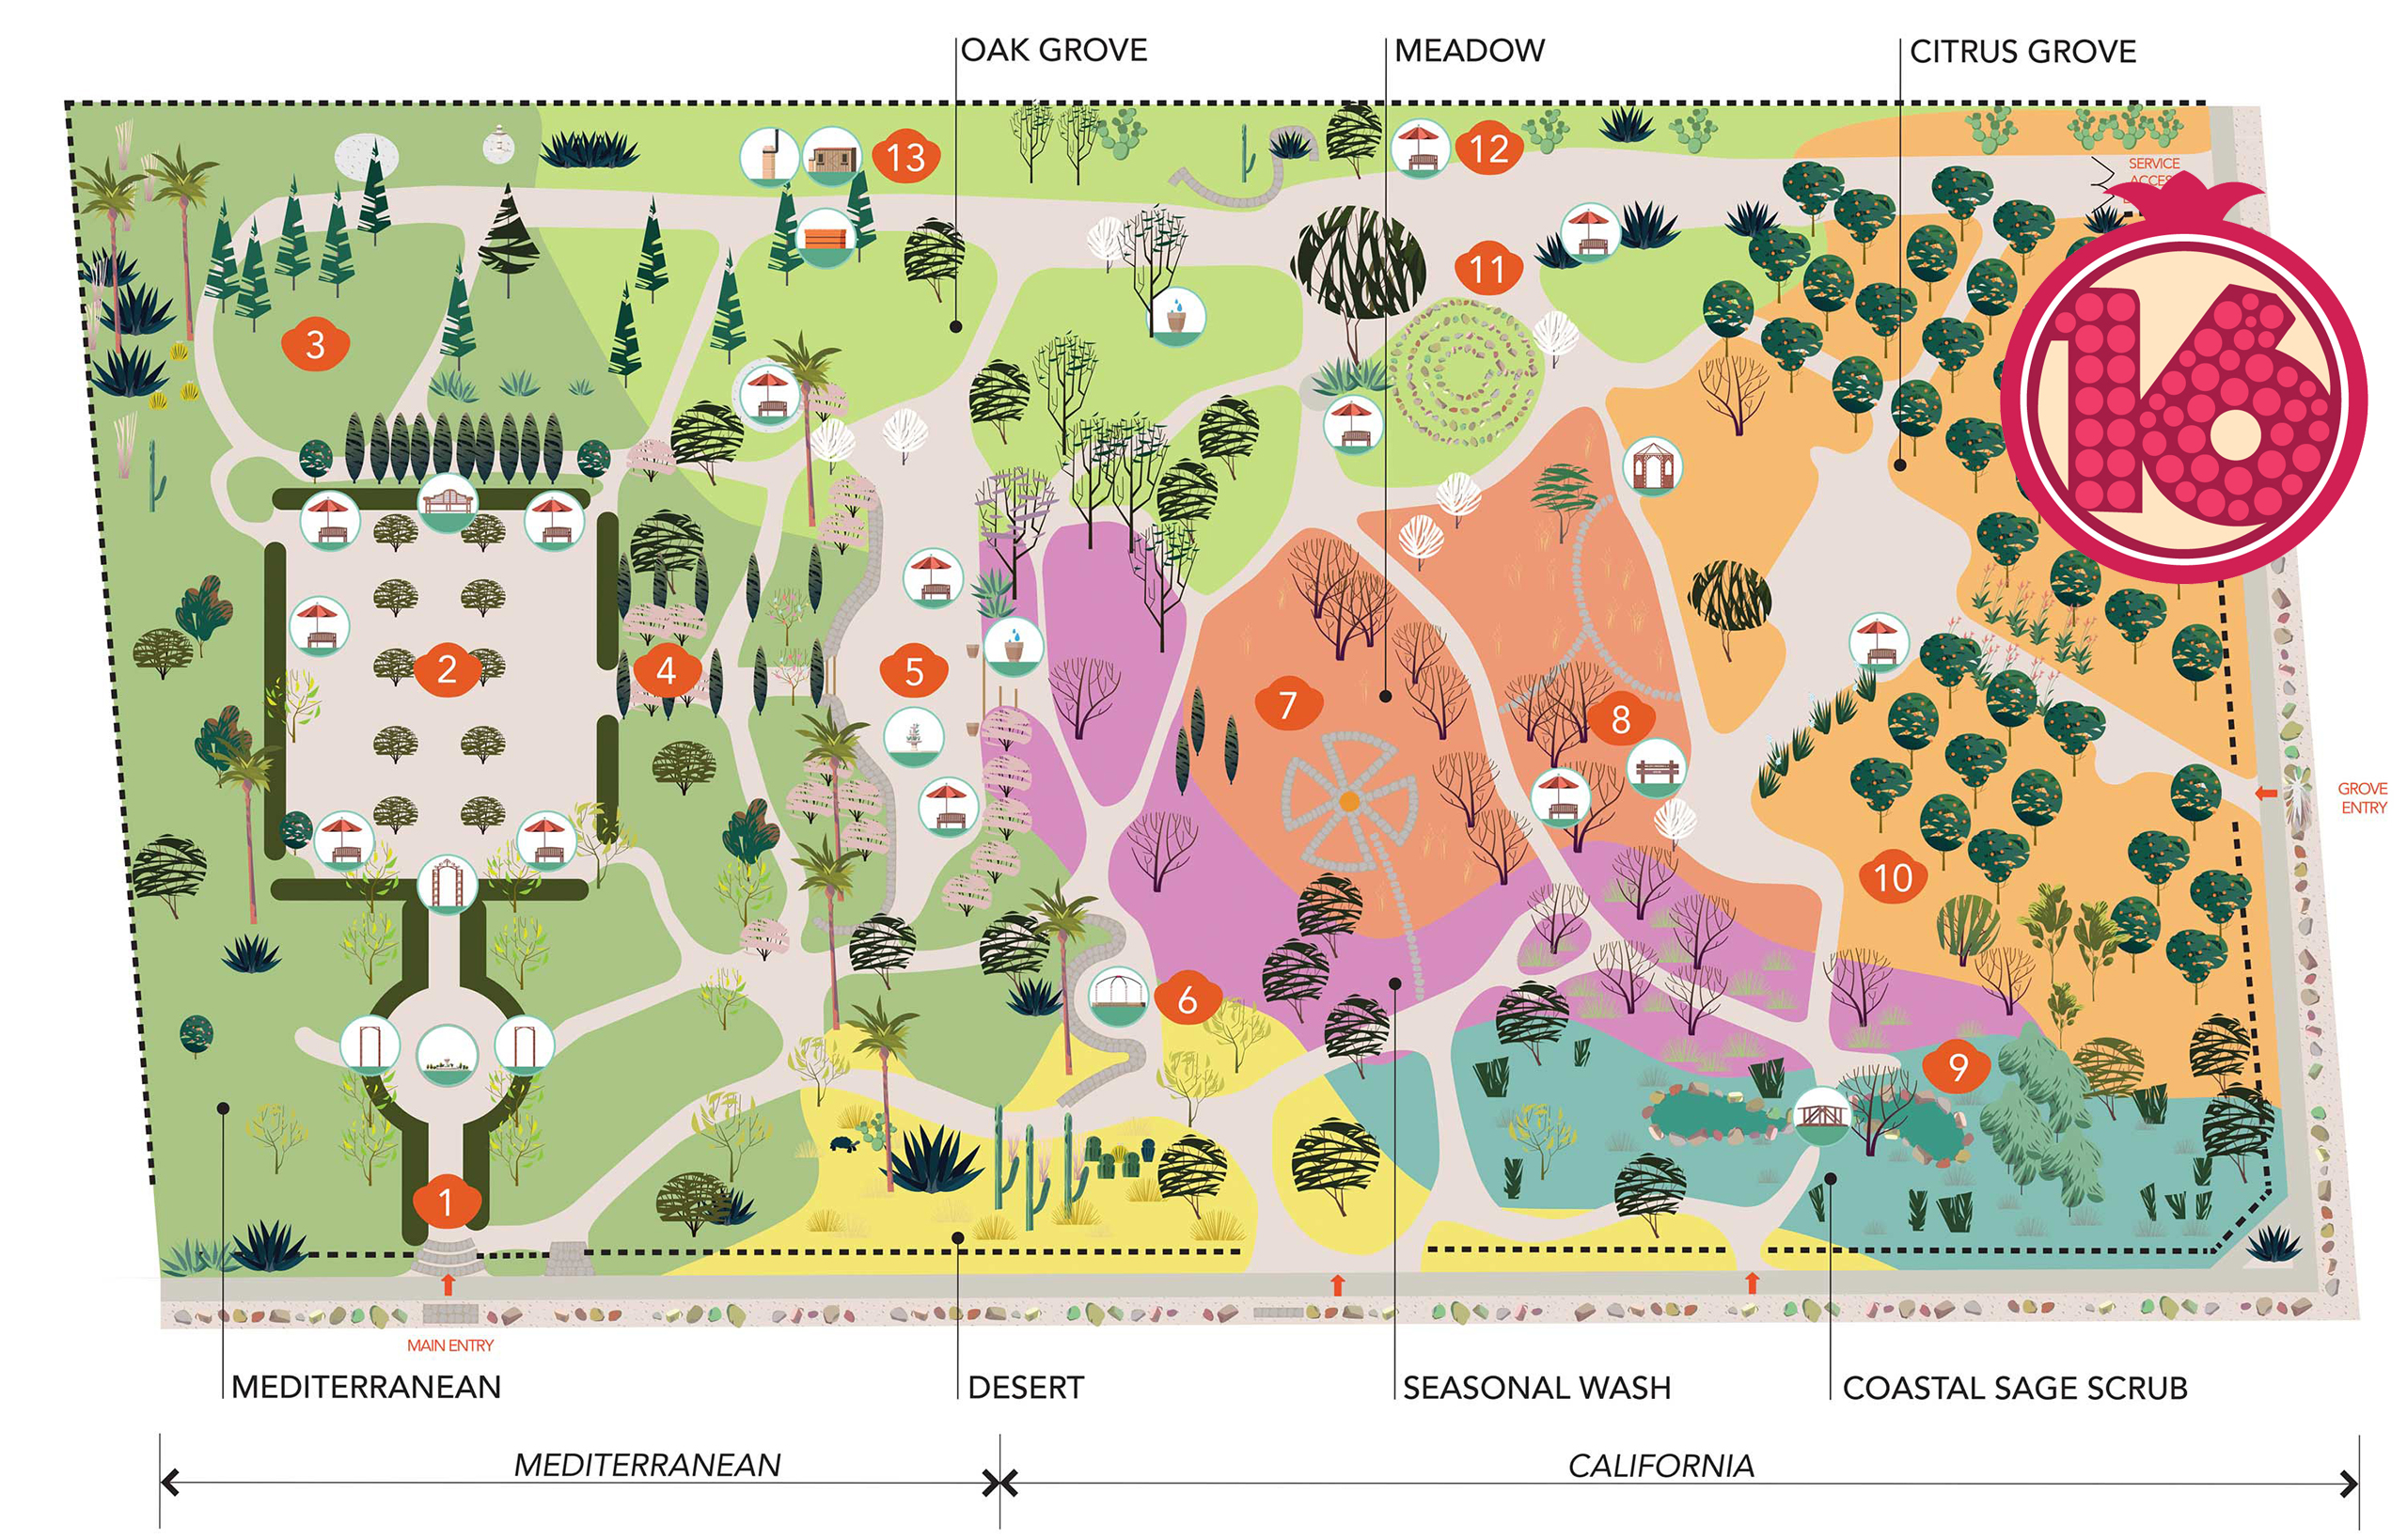 Arlington Garden Pasadena map